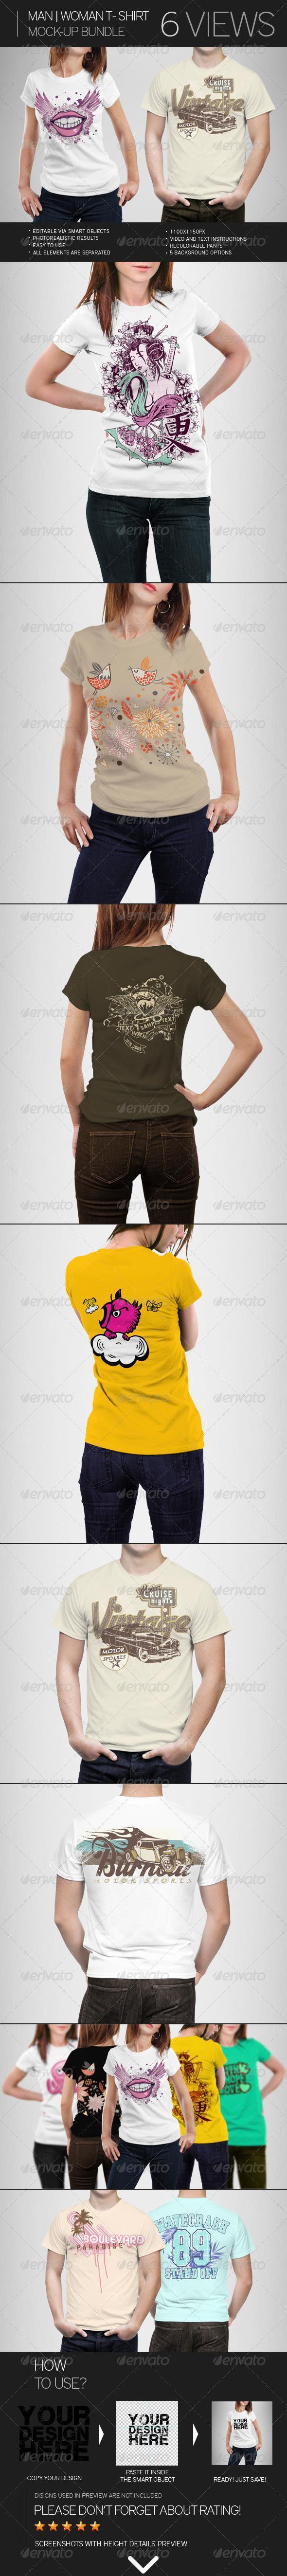 Man Woman T-shirt Mockup Bundle